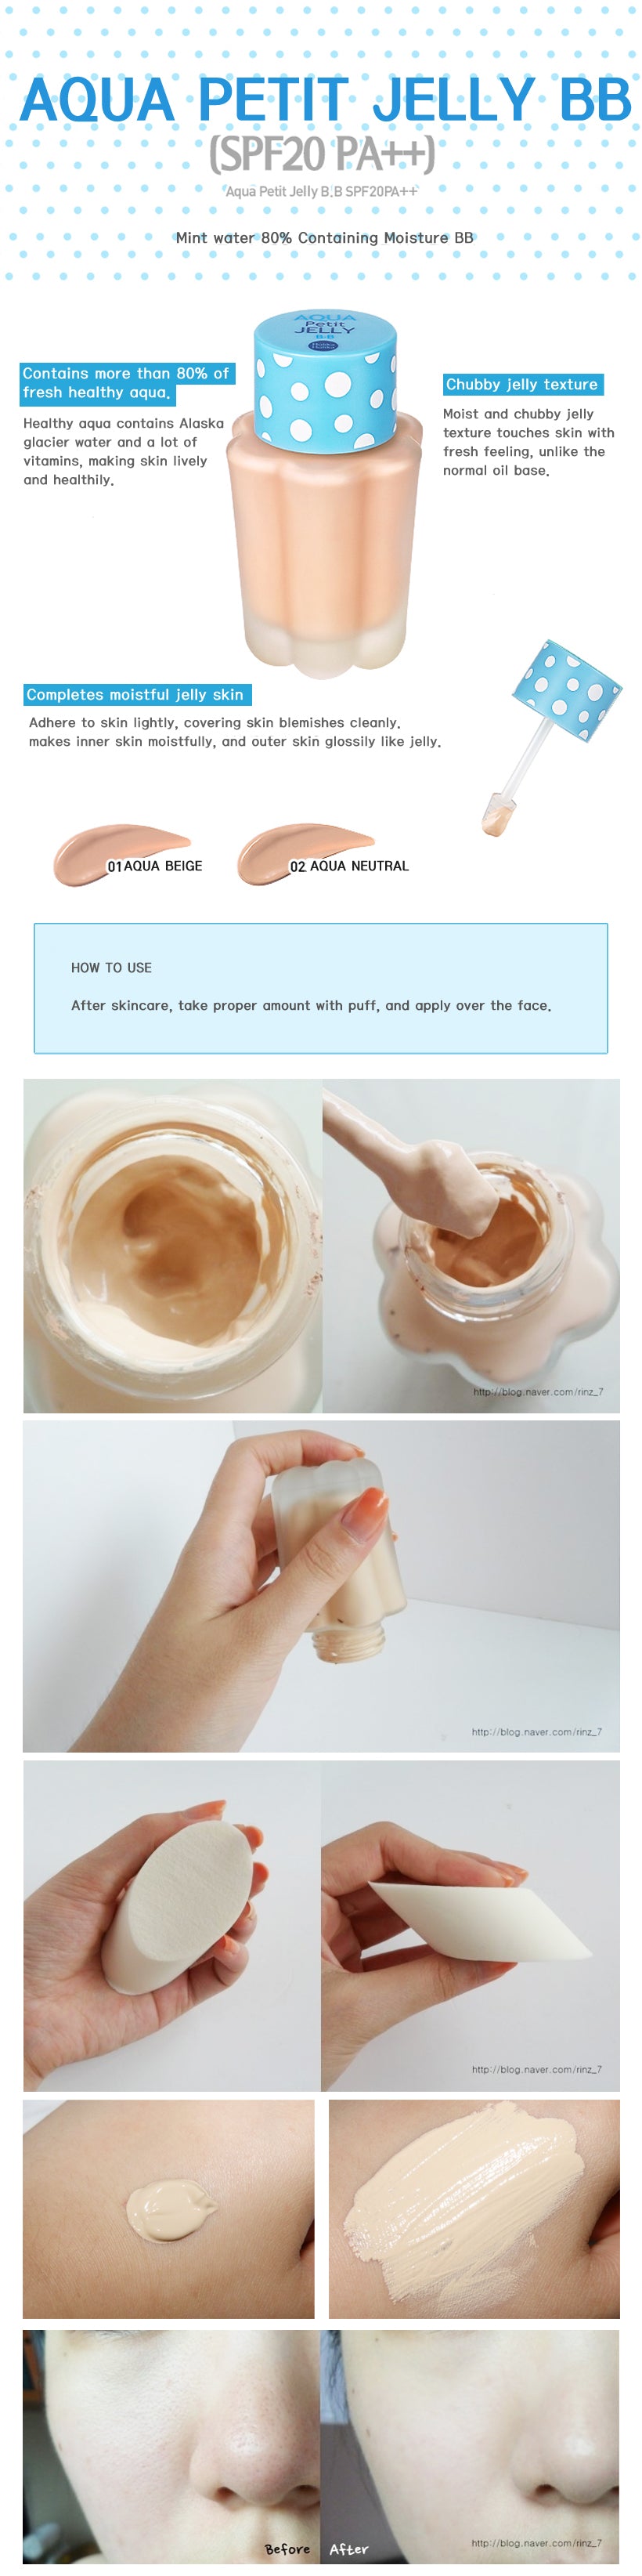 BB Cream Korea Terbaik | Aqua Petit Jelly BB Cream